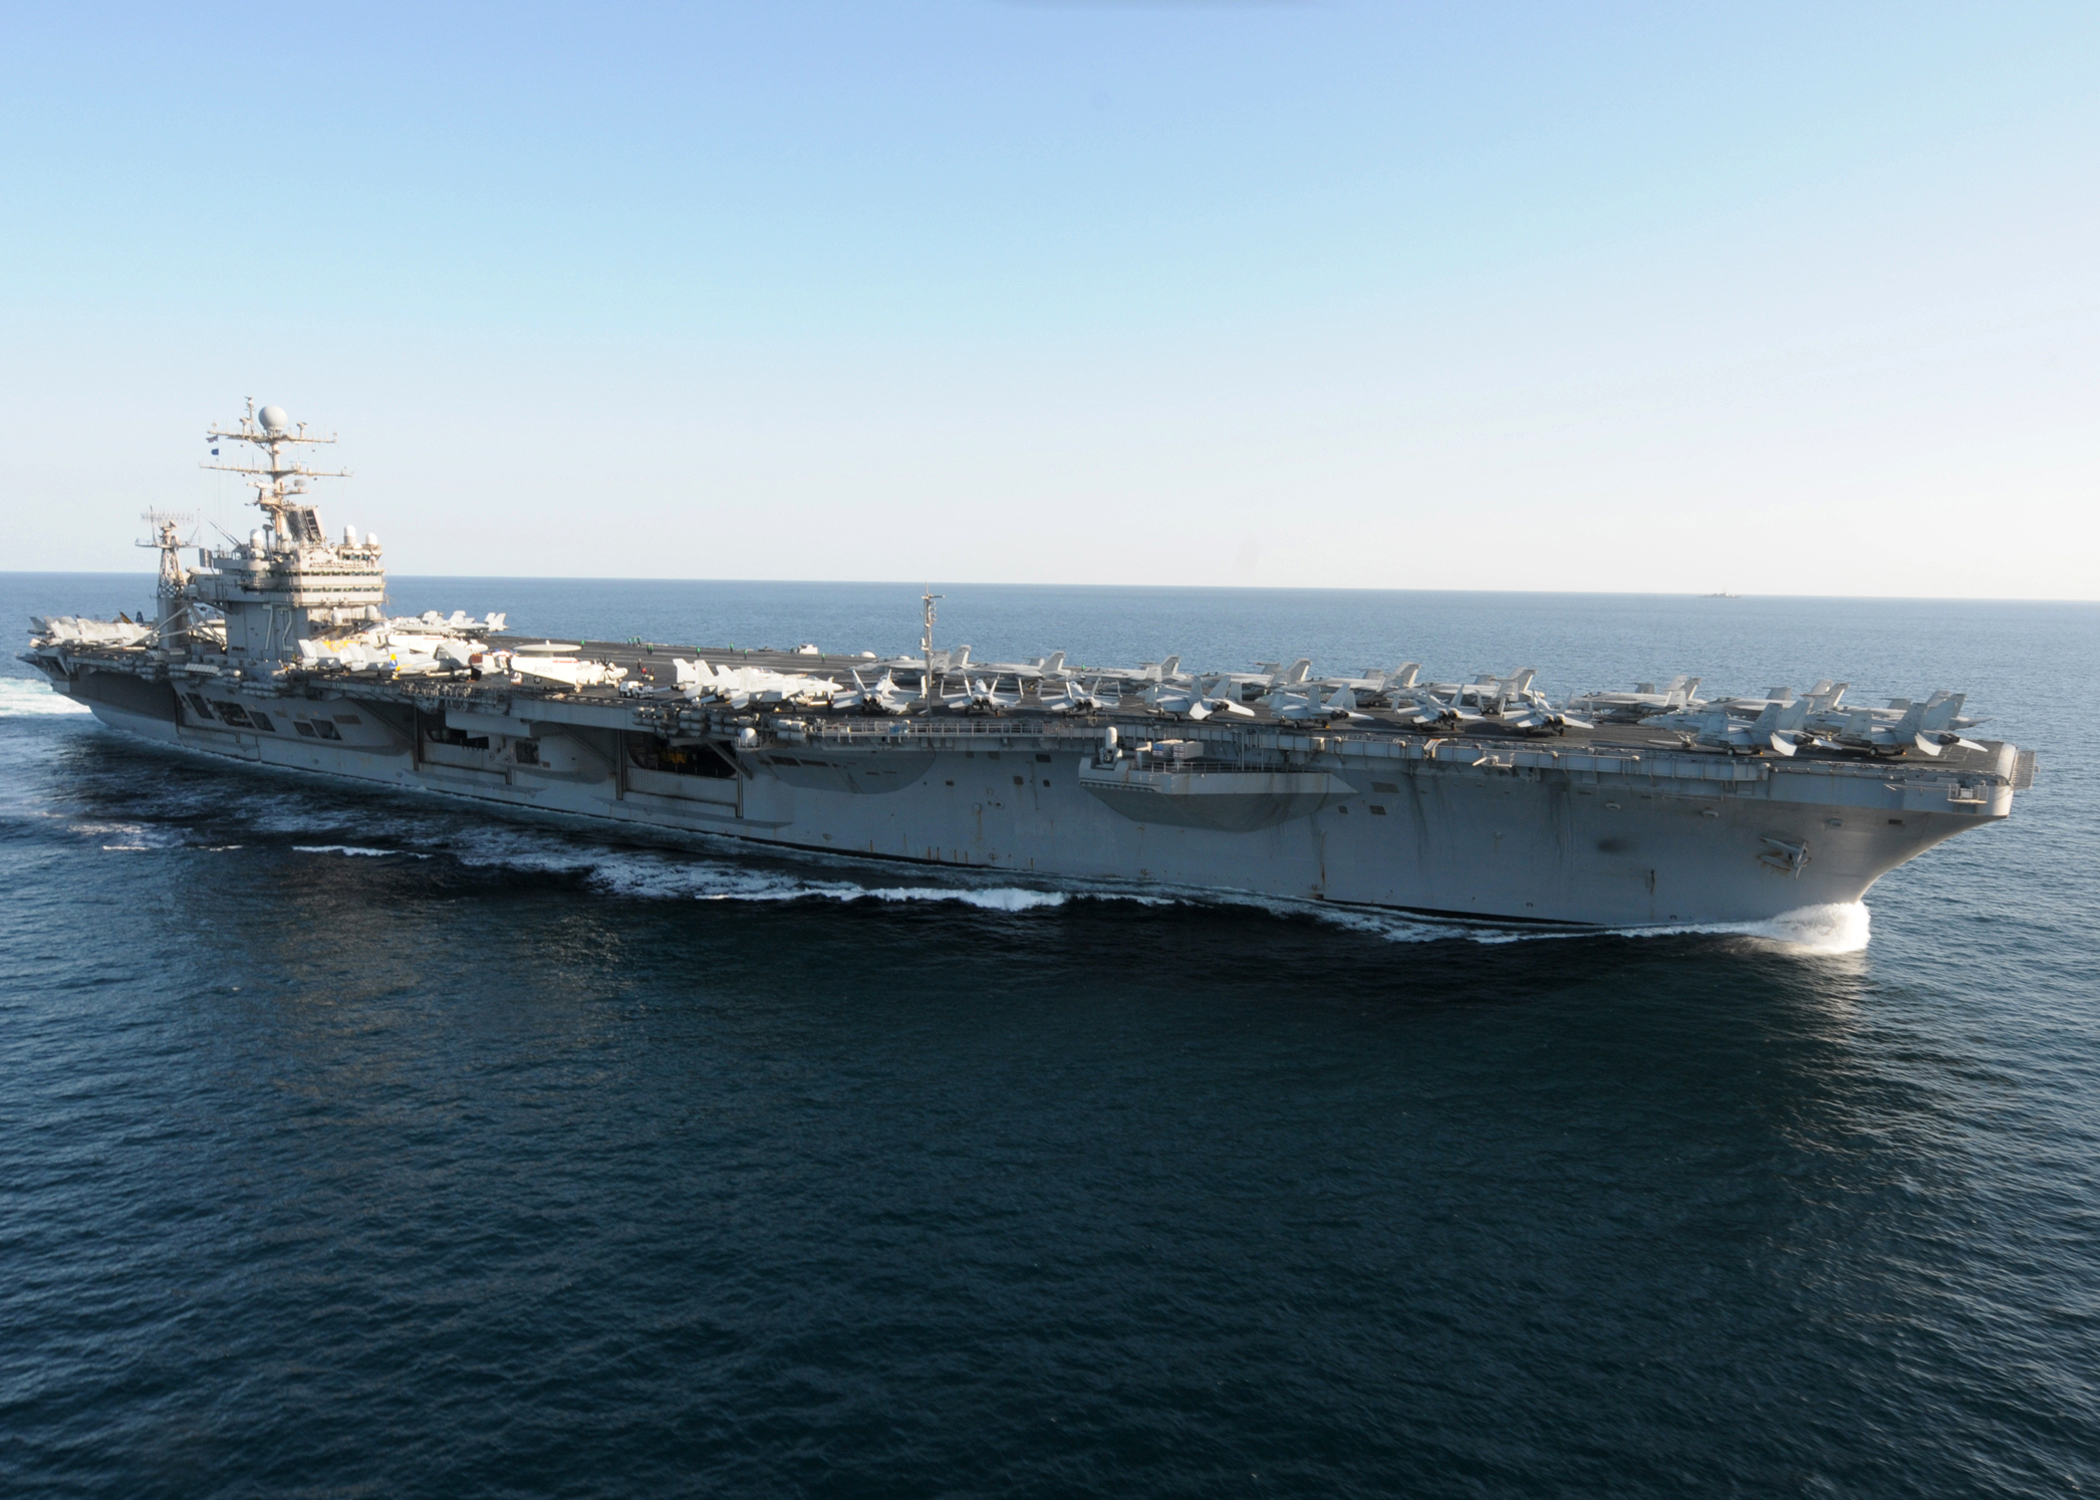 USS Abraham Lincoln (CVN-72) Backgrounds, Compatible - PC, Mobile, Gadgets| 2100x1500 px